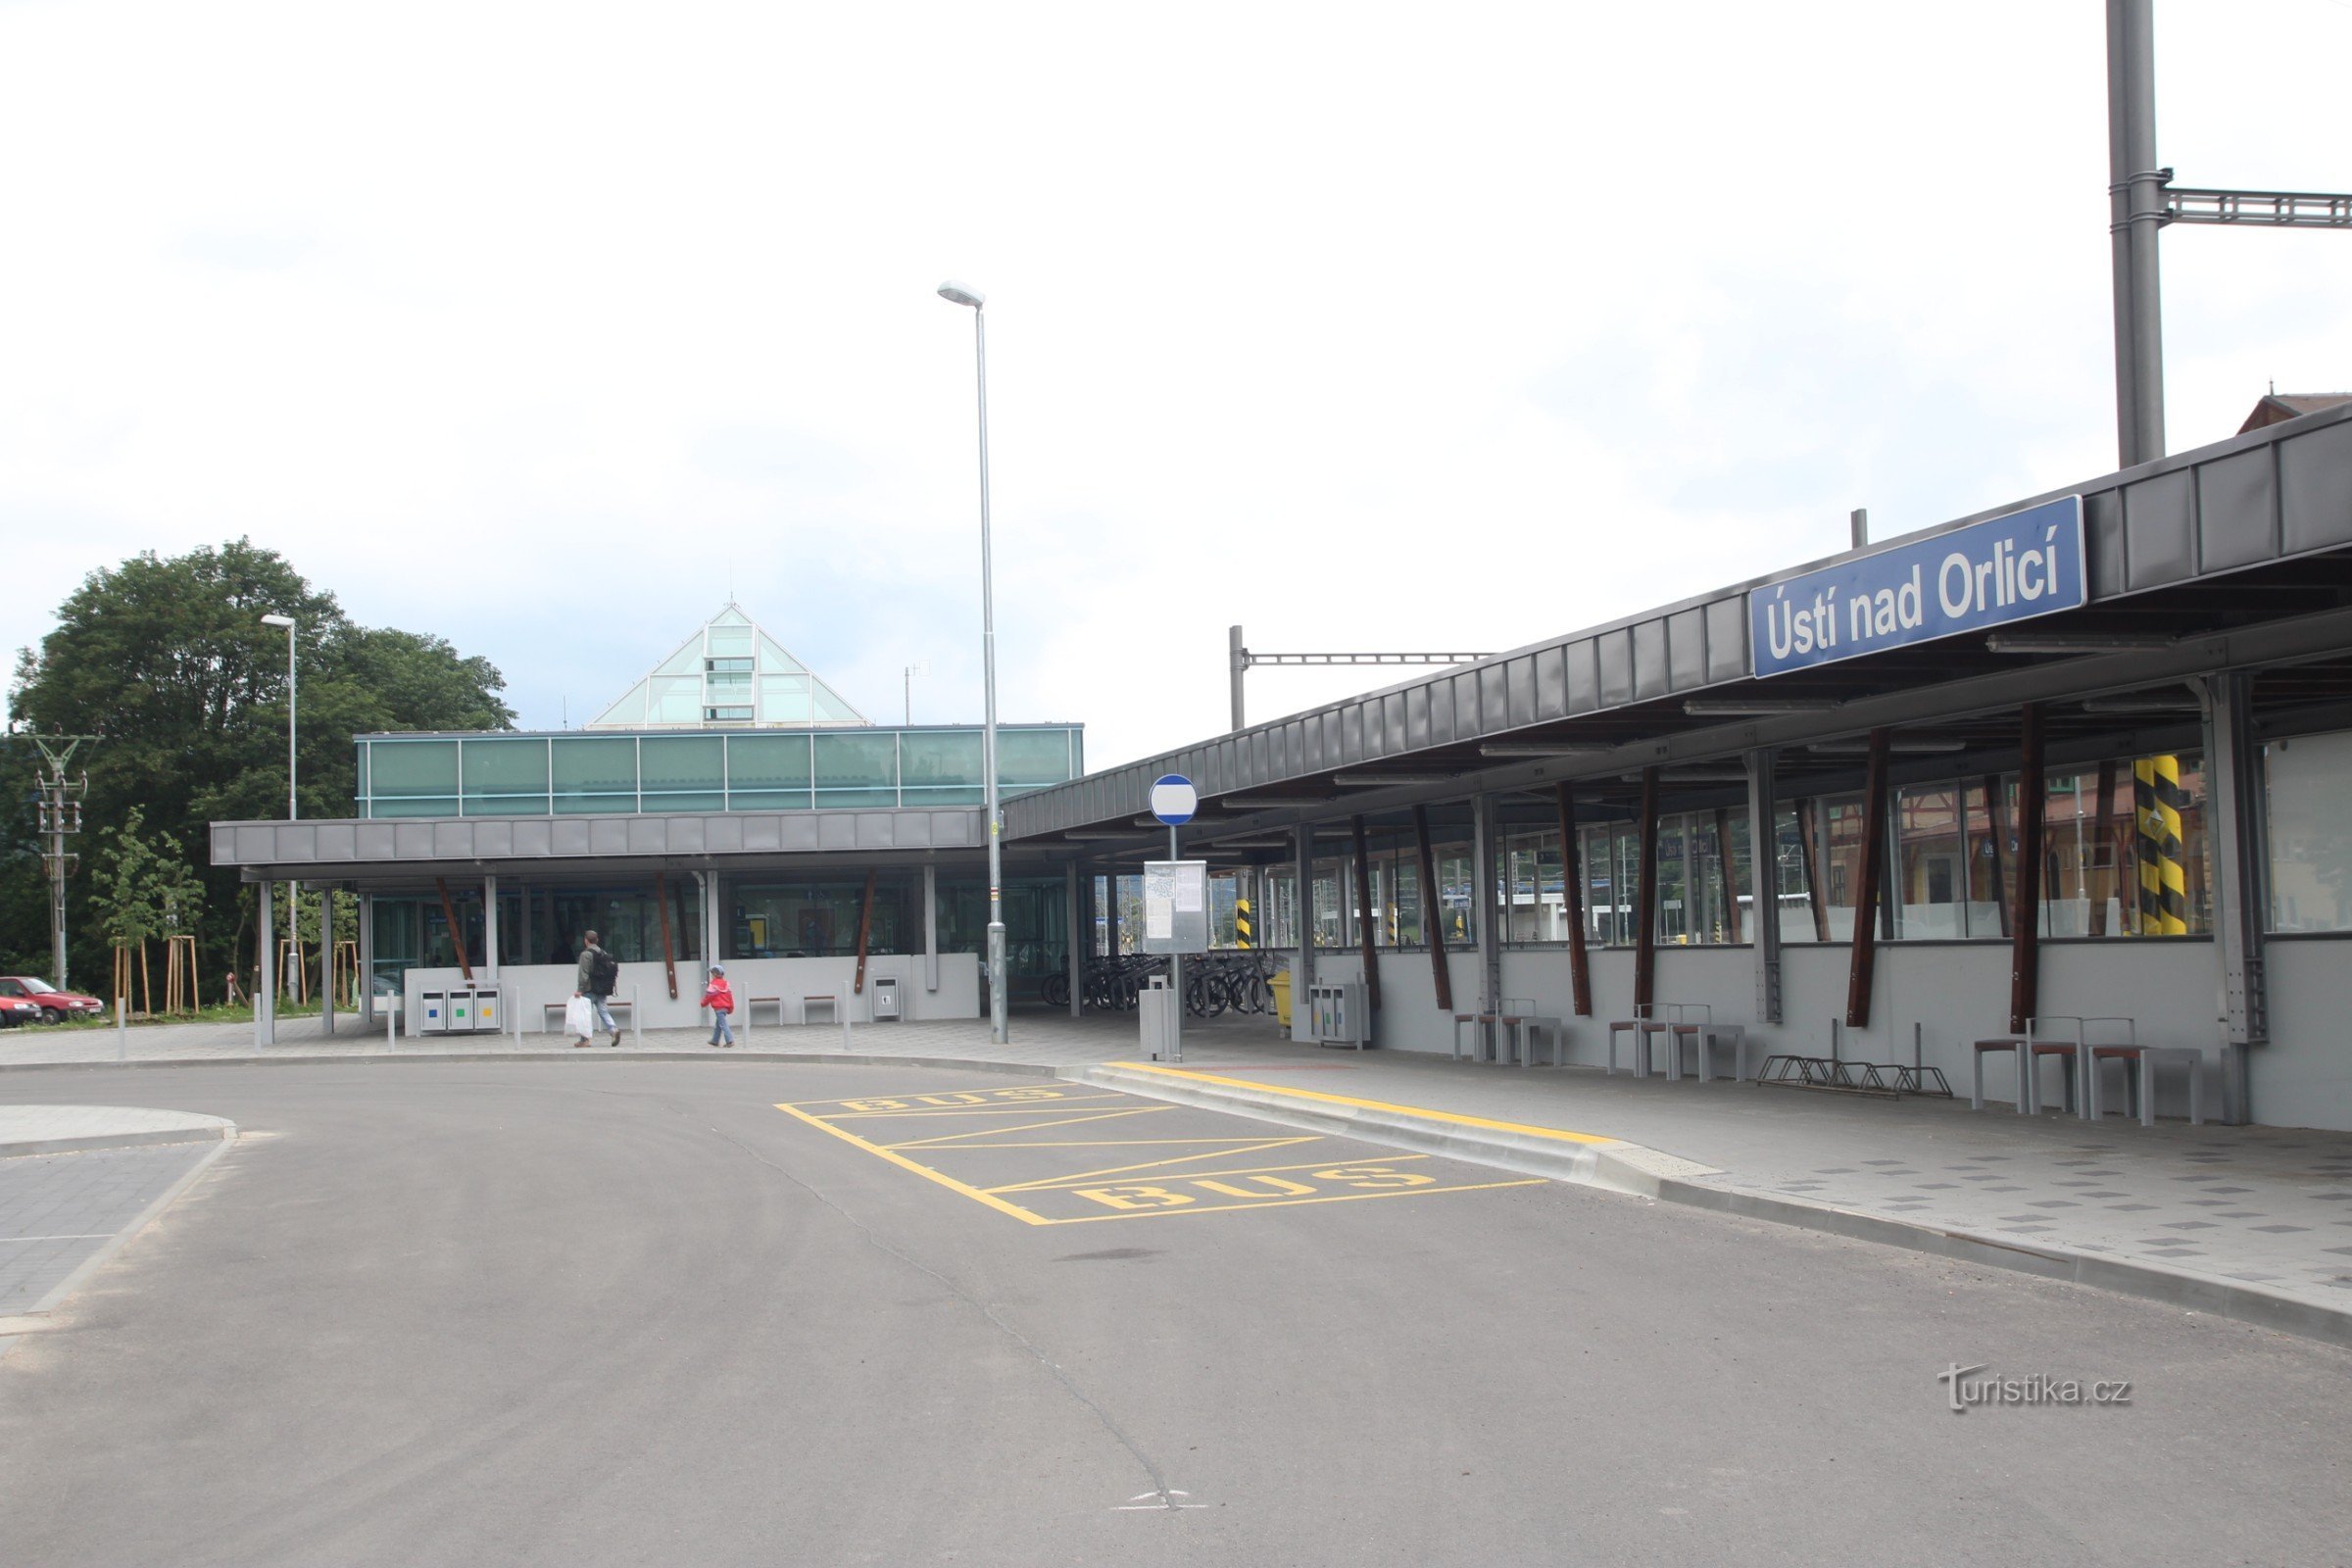 La nuova stazione ferroviaria di Ústí nad Orlicí